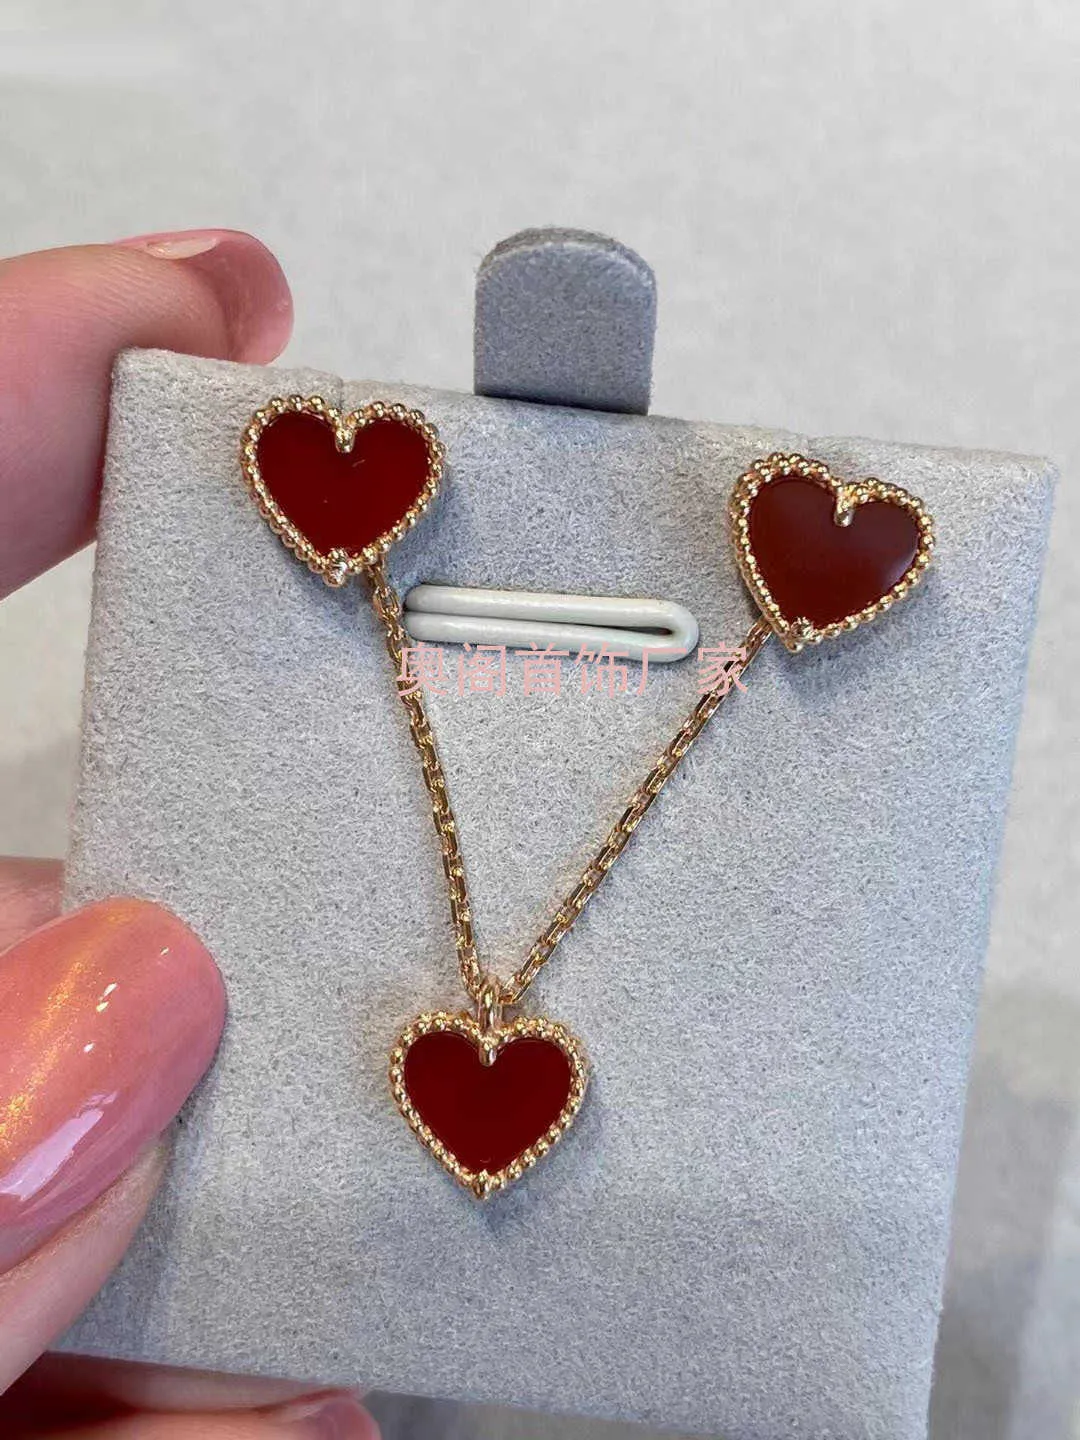 Designer Van V Gold Red Love Necklace Women 925 Silver Placed 18k Rose Heart Bracciale Piccole orecchini agati